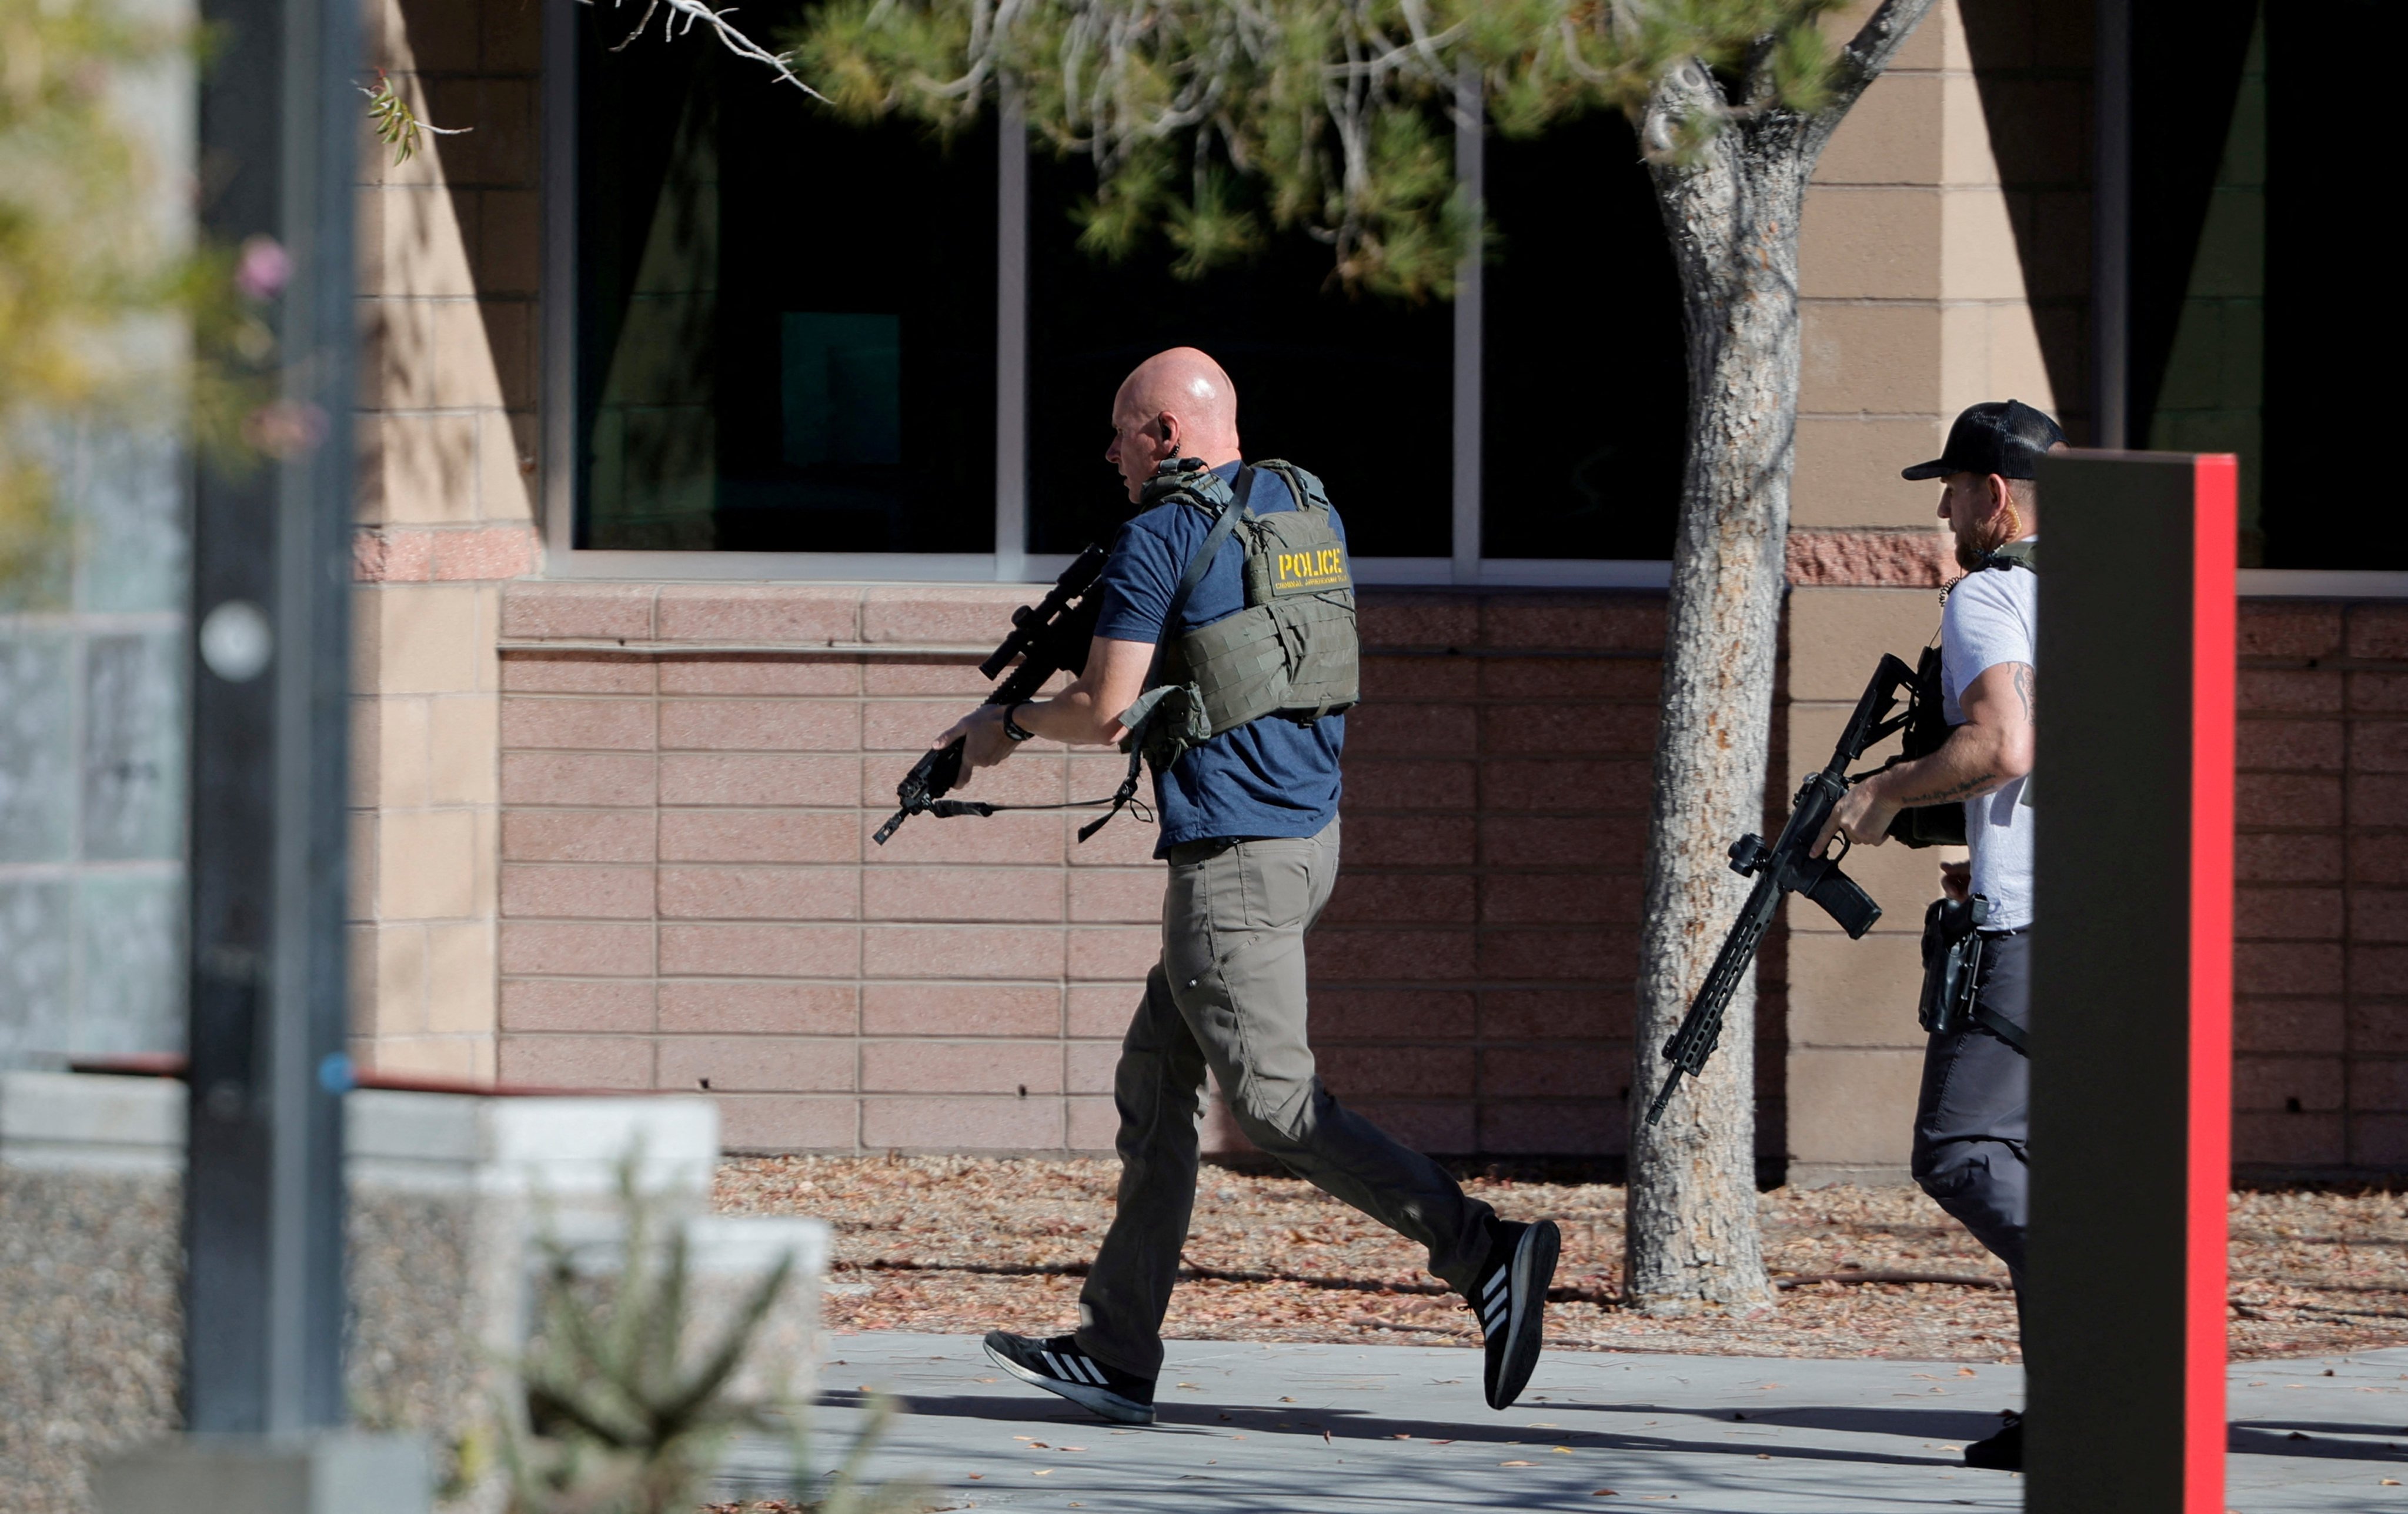 Law enforcement officers at the scene. Photo: Las Vegas Sun via Reuters